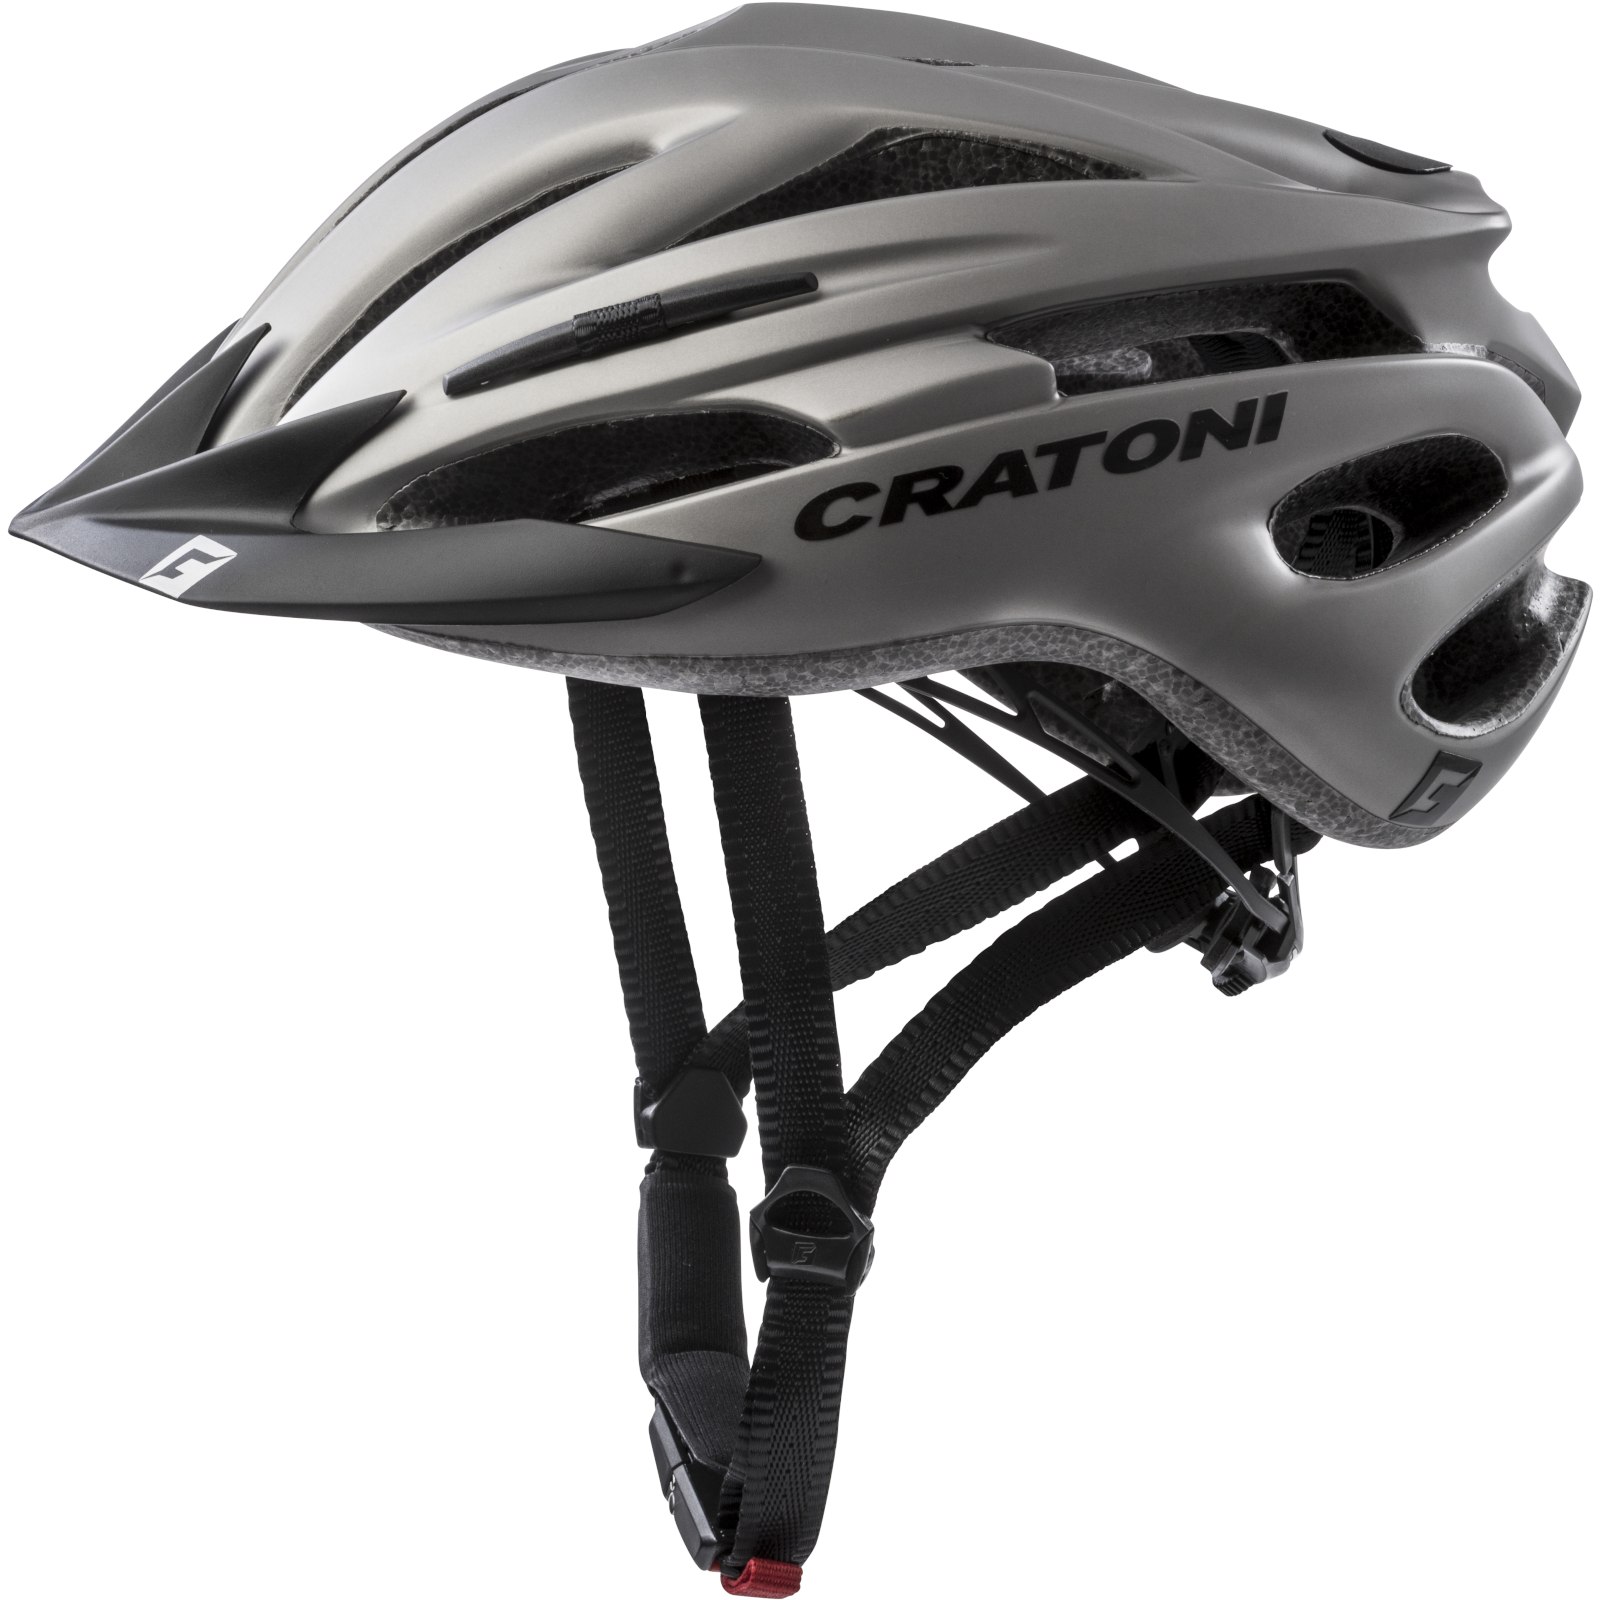 Productfoto van CRATONI Pacer Helmet - anthracite matt